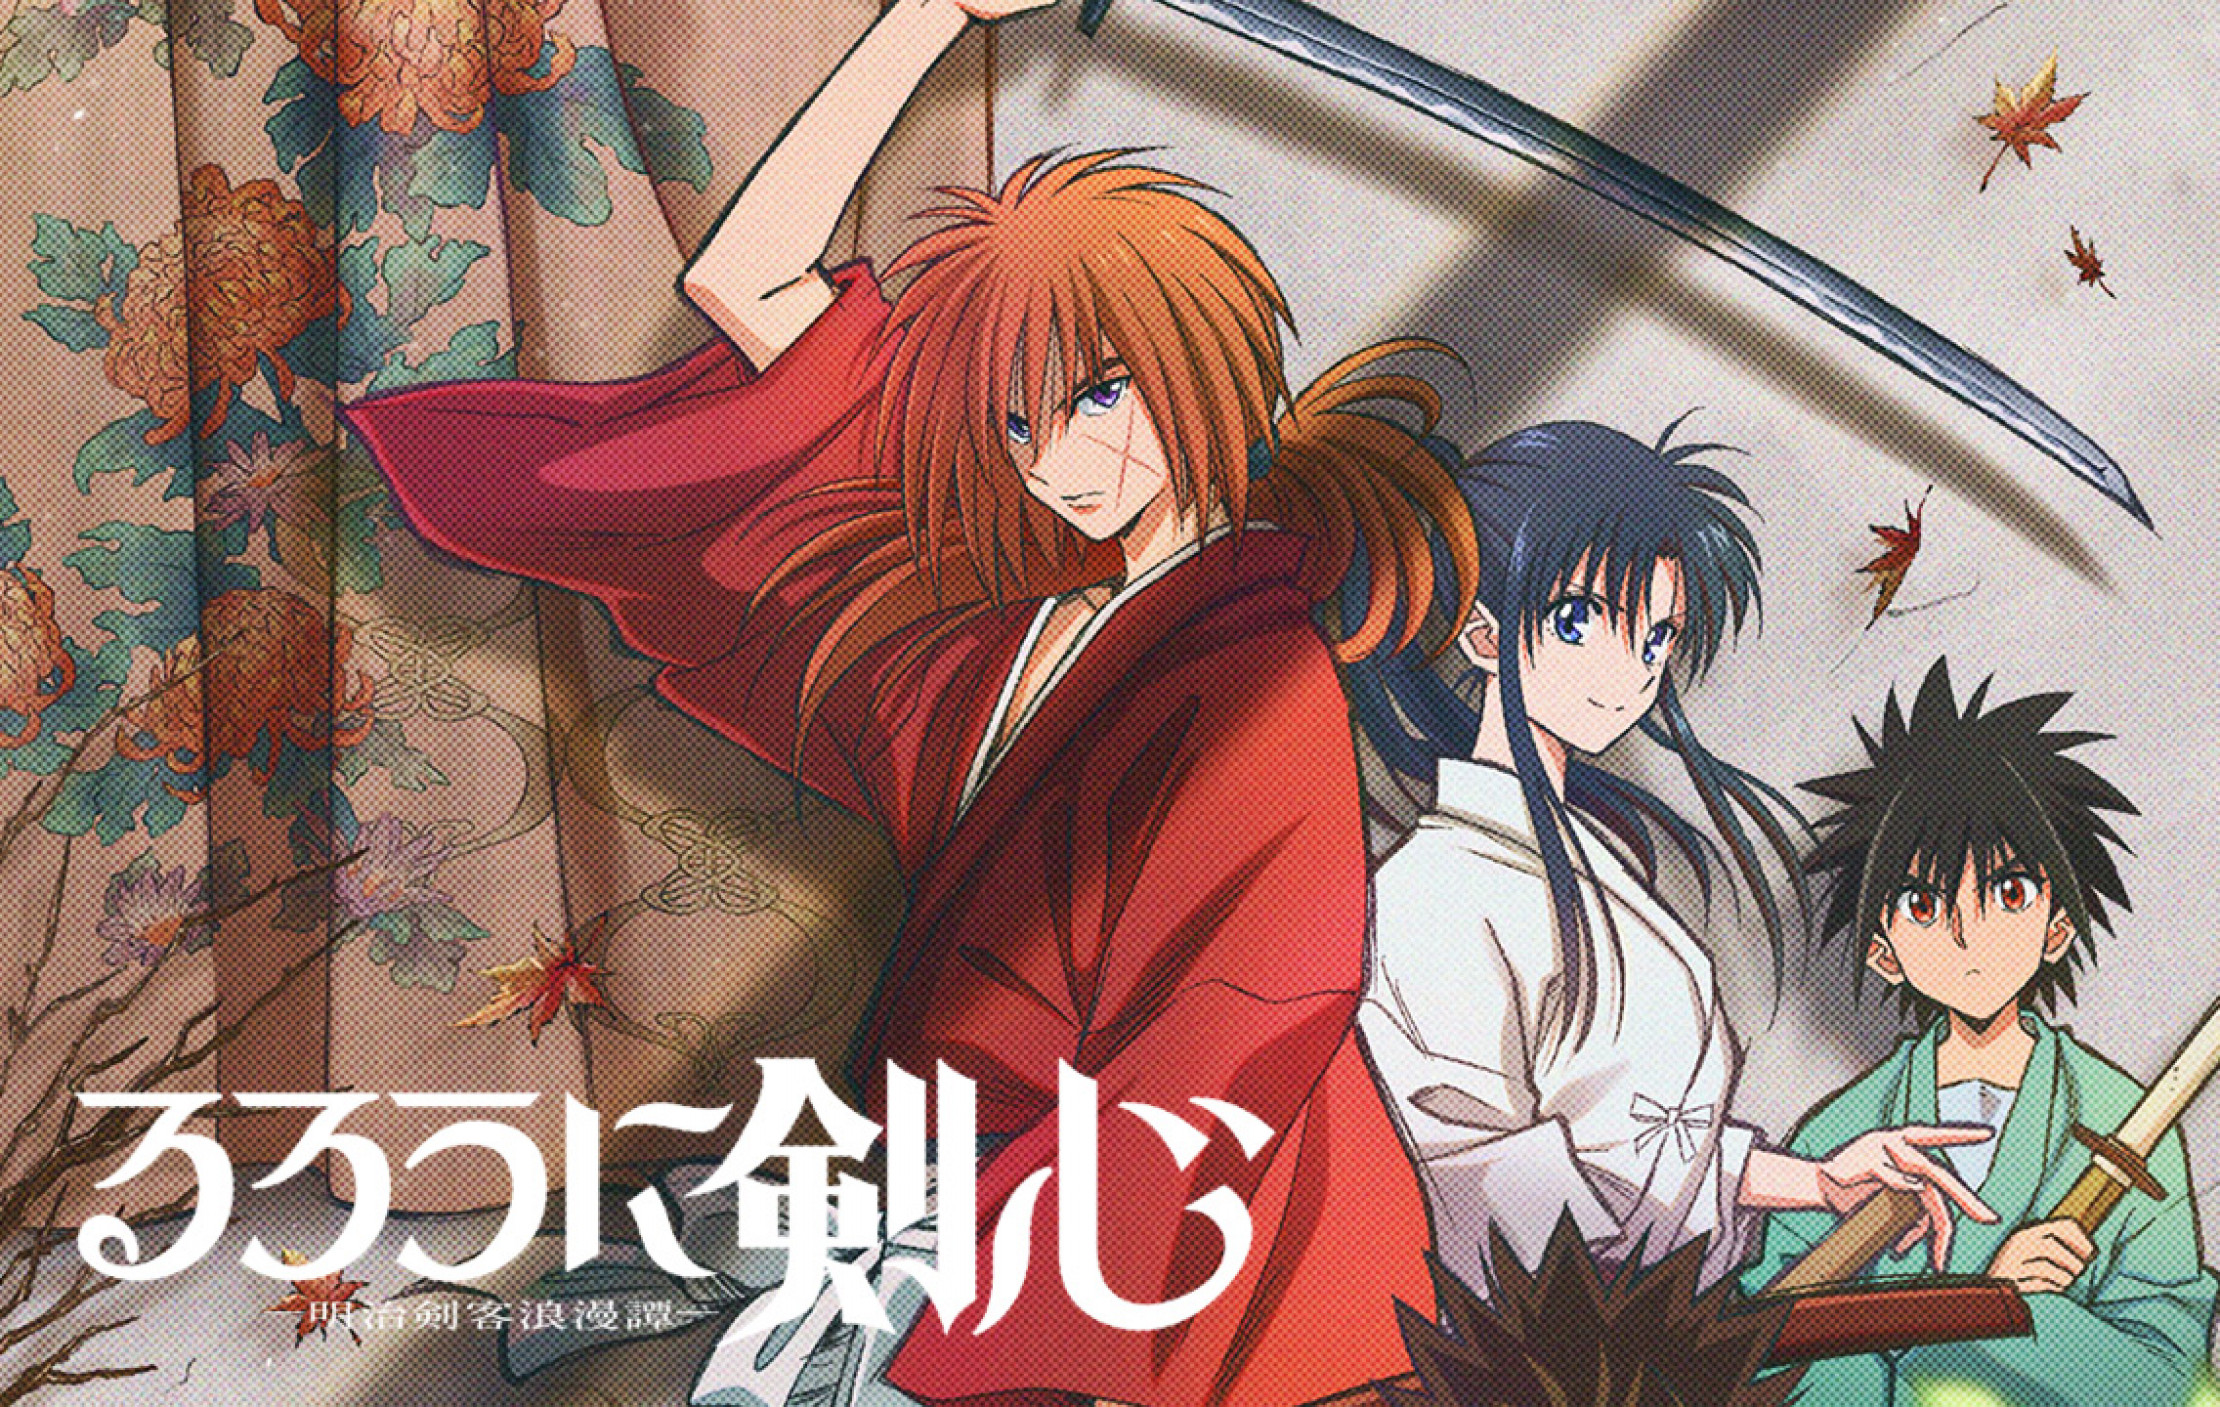 Rurouni Kenshin 2023 Remake